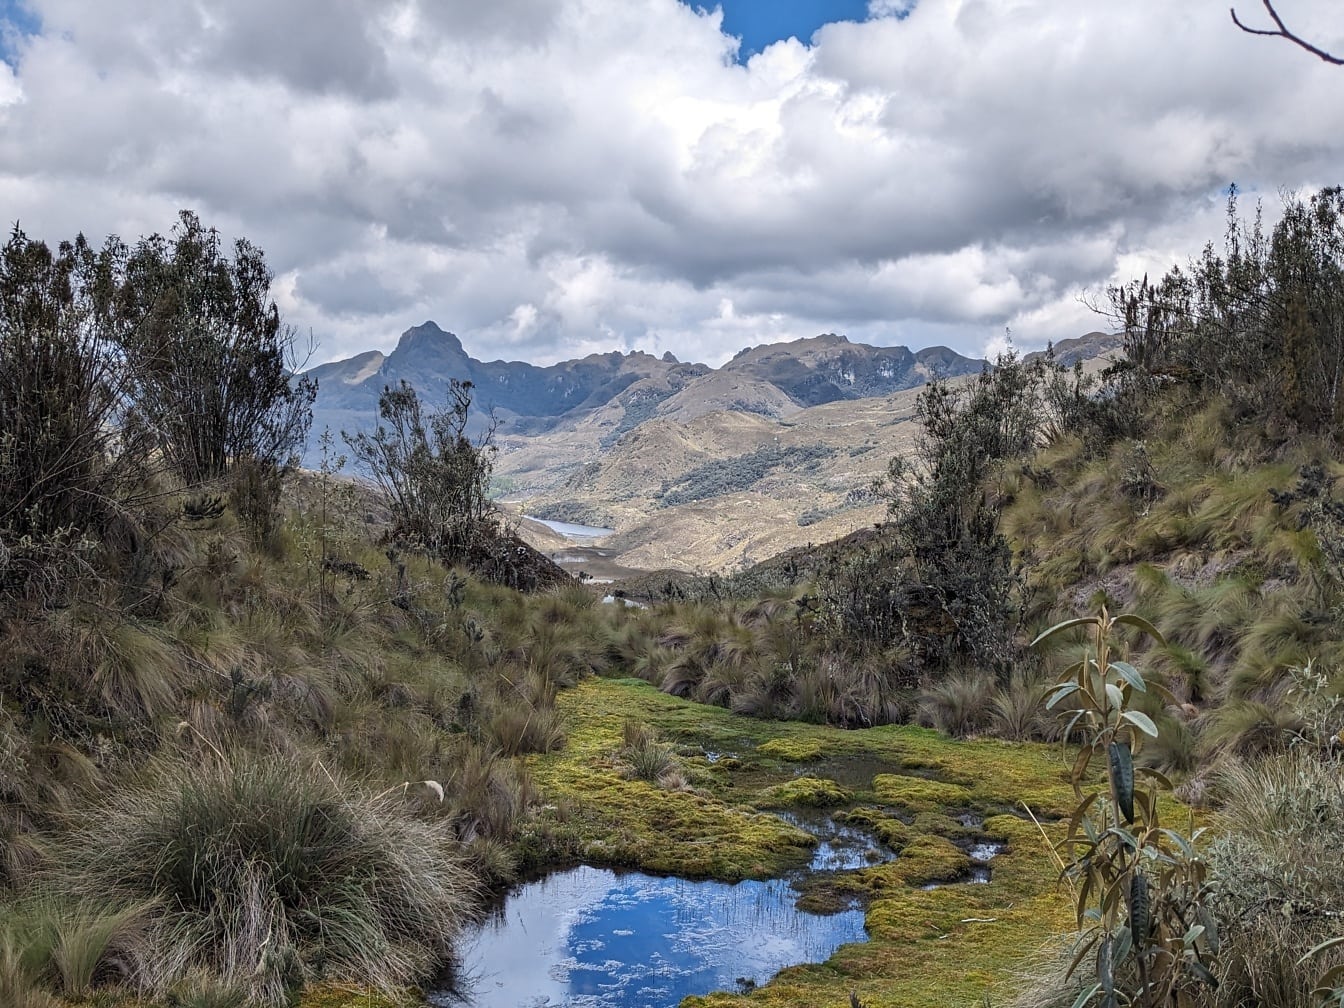 Pârâu mic într-o vale cu munți în fundal, în parcul natural Cajes din Ecuador